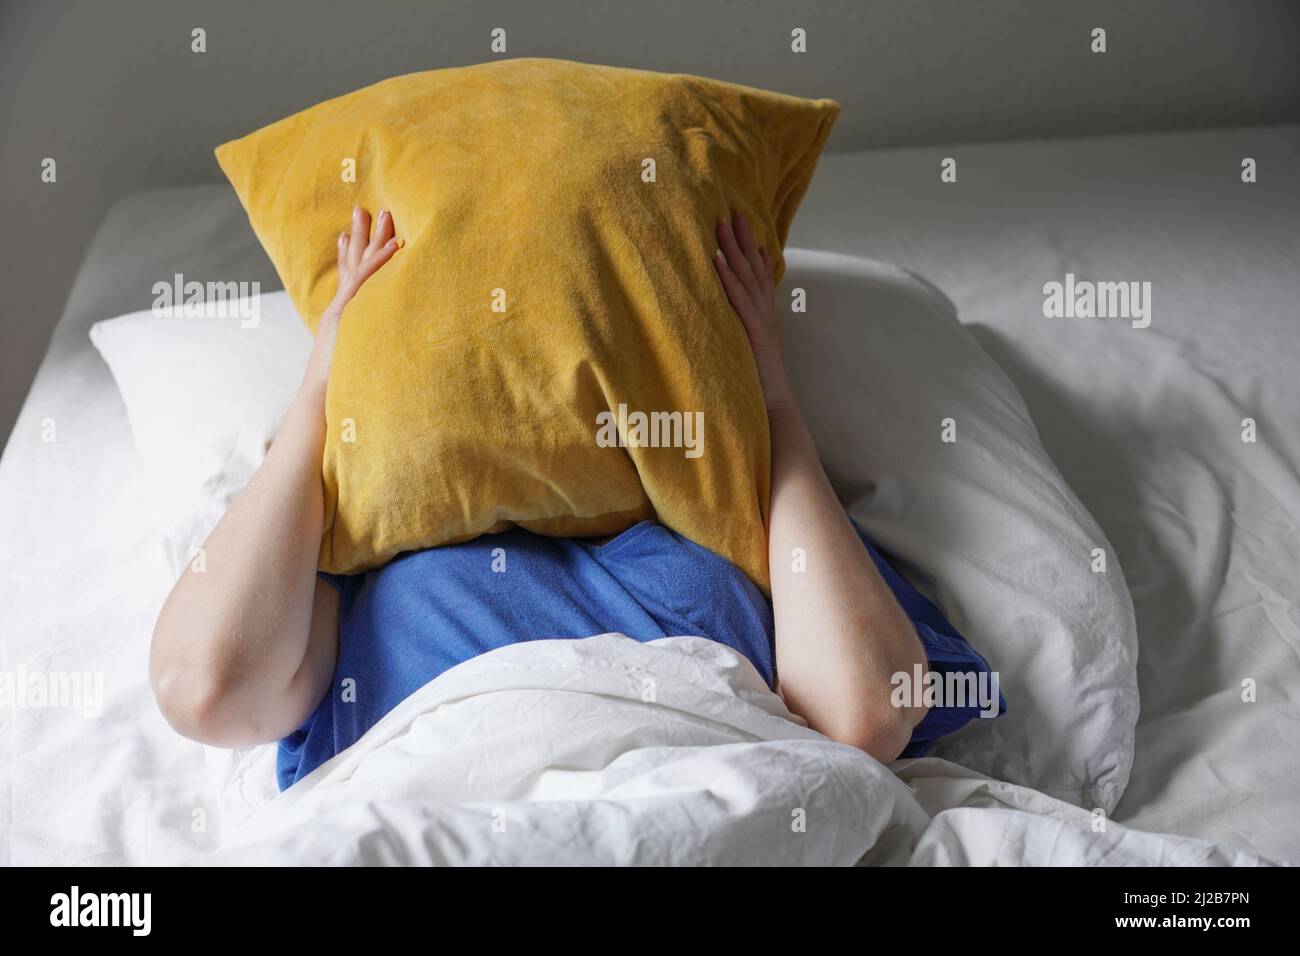 Müde, lustlose Person, die im Bett liegt und das Gesicht unter dem Kissen versteckt Stockfoto